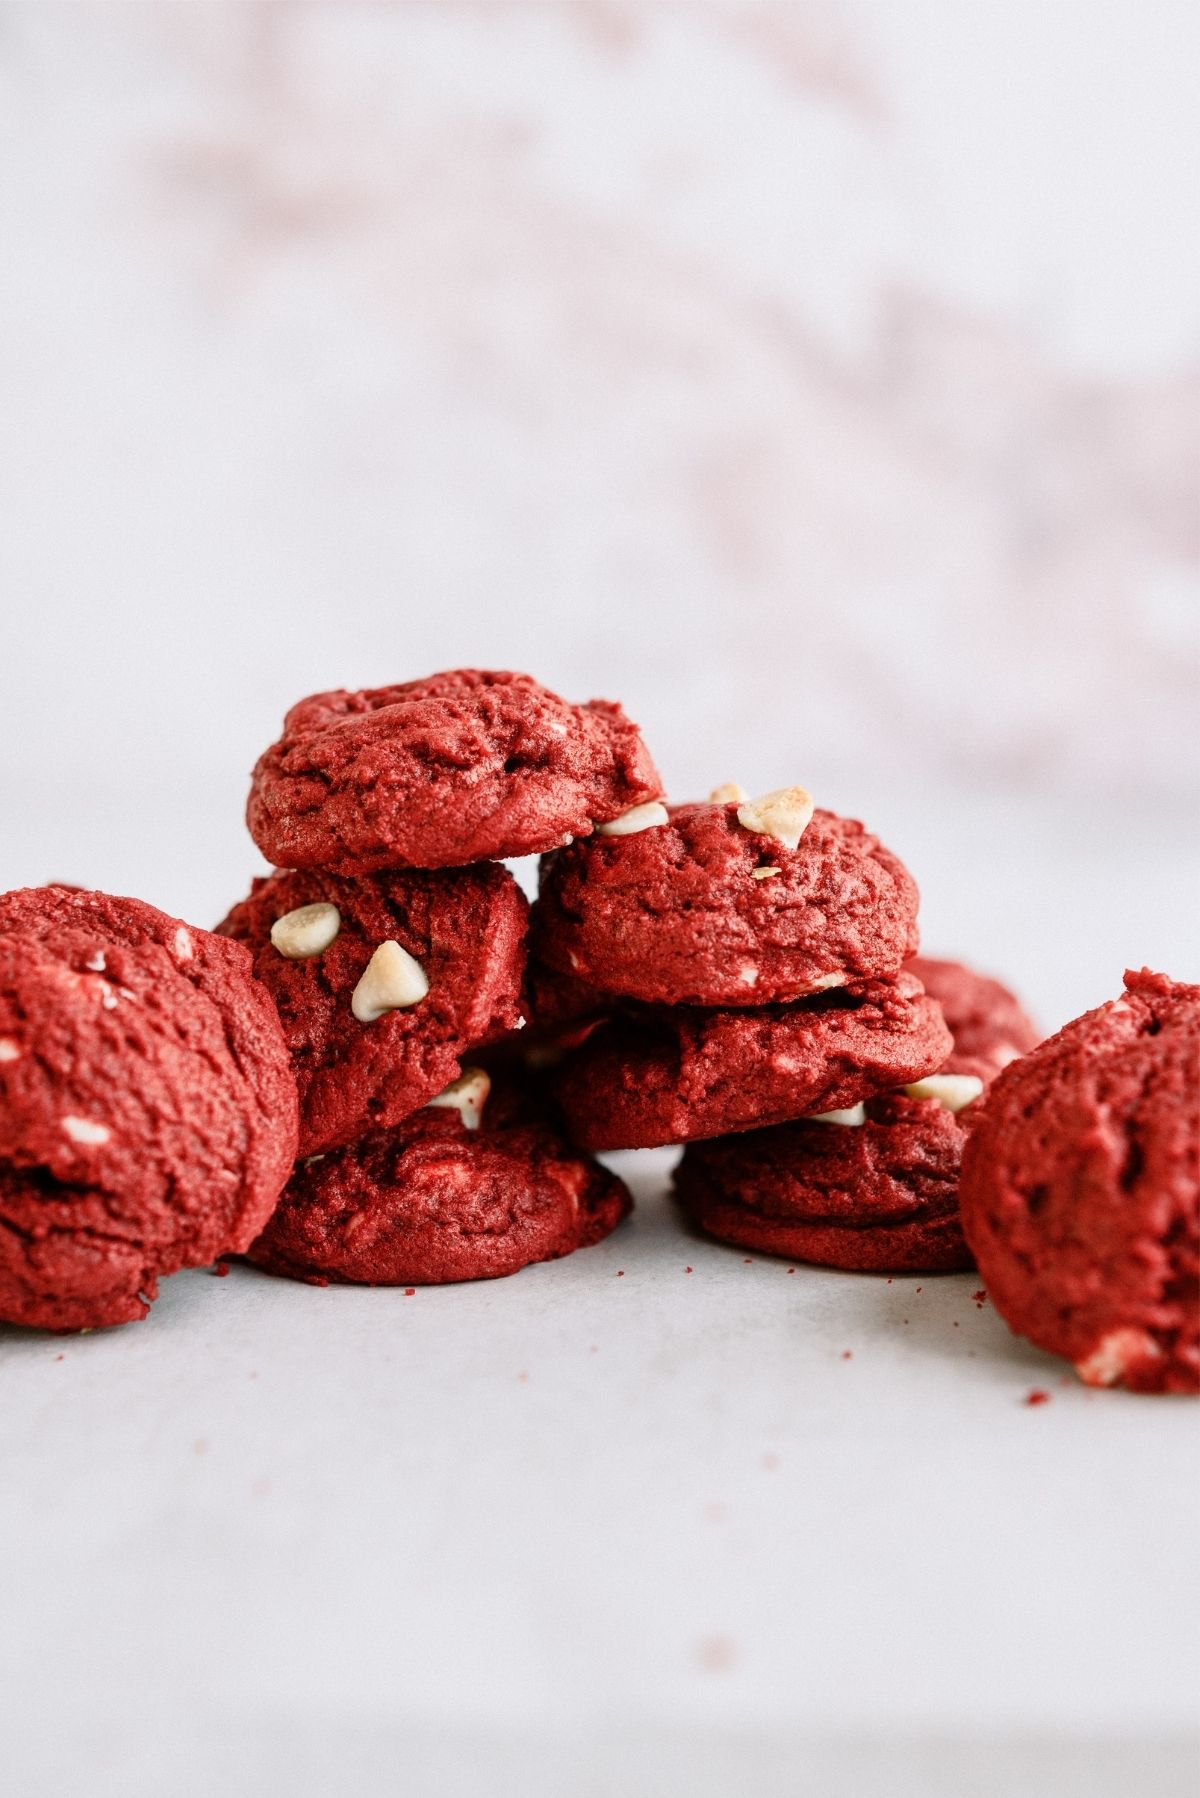 Velvet cookies red The BEST